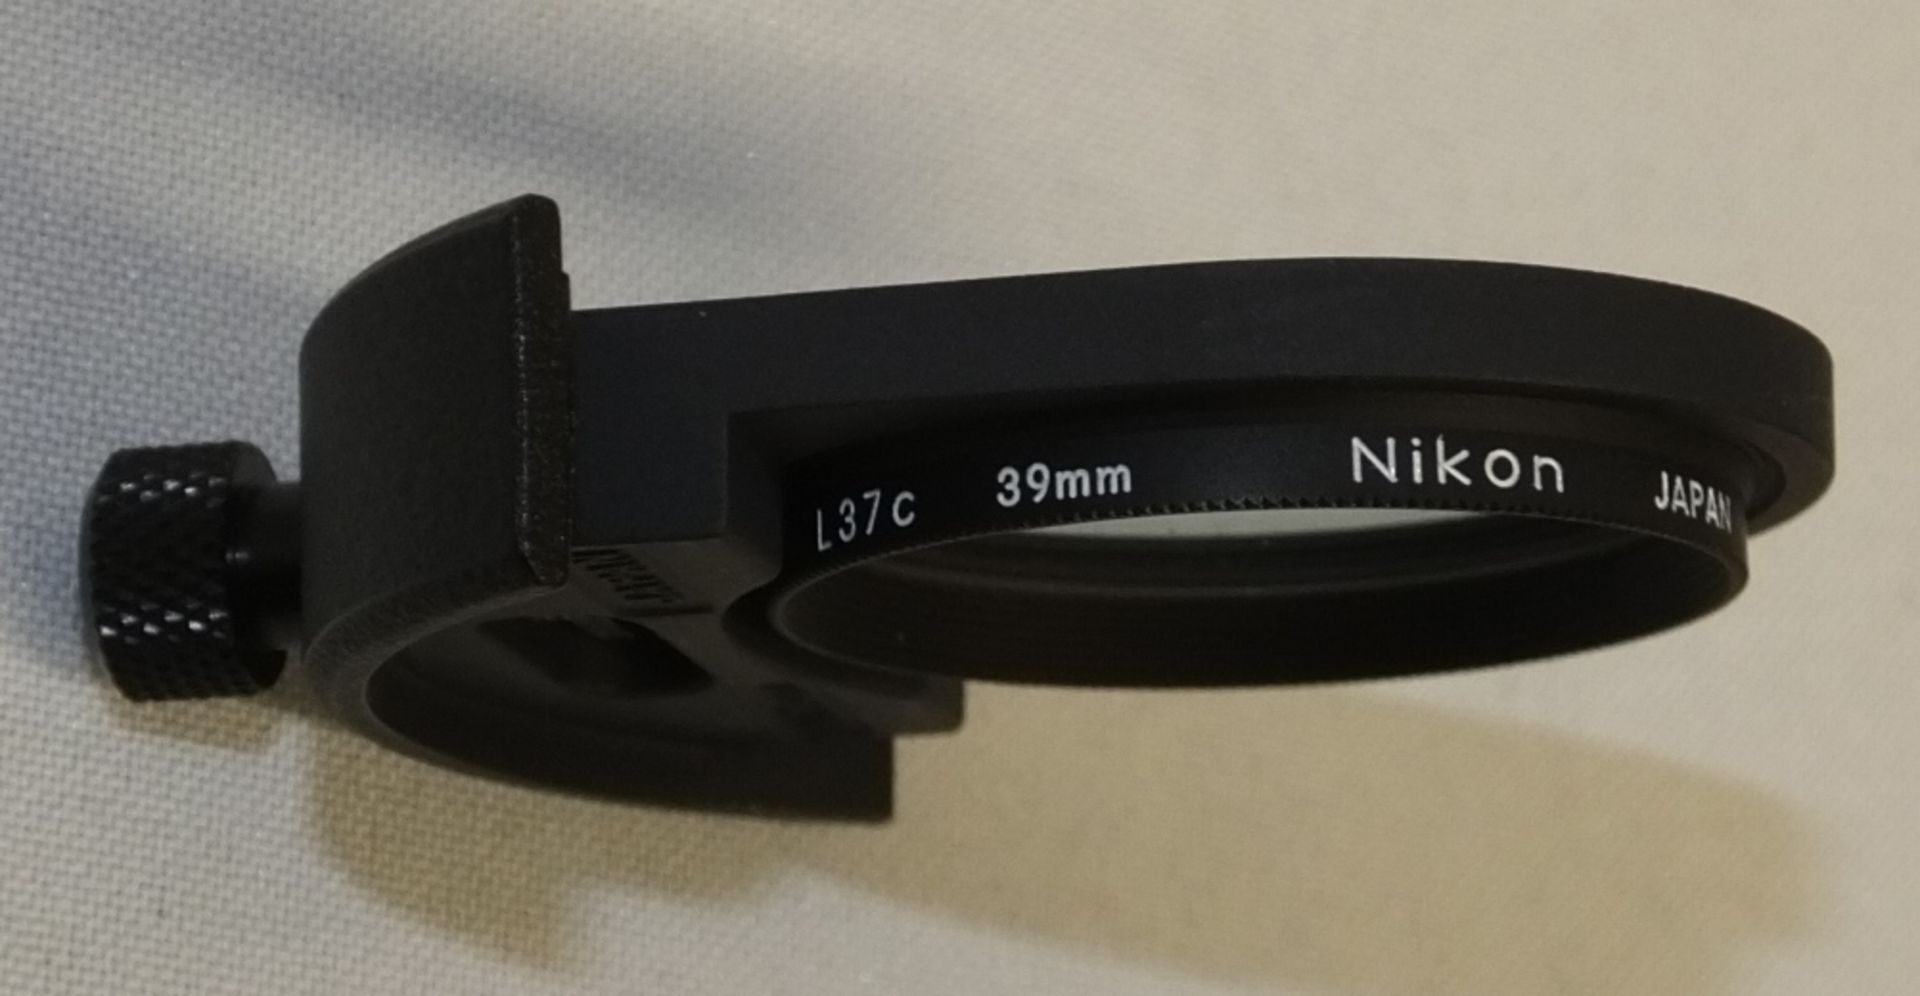 Nikon ED AF Nikkor 300mm 1:4 Lens with Nikon L37c 82mm Filter and Nikon CL-42 Case - Image 7 of 7